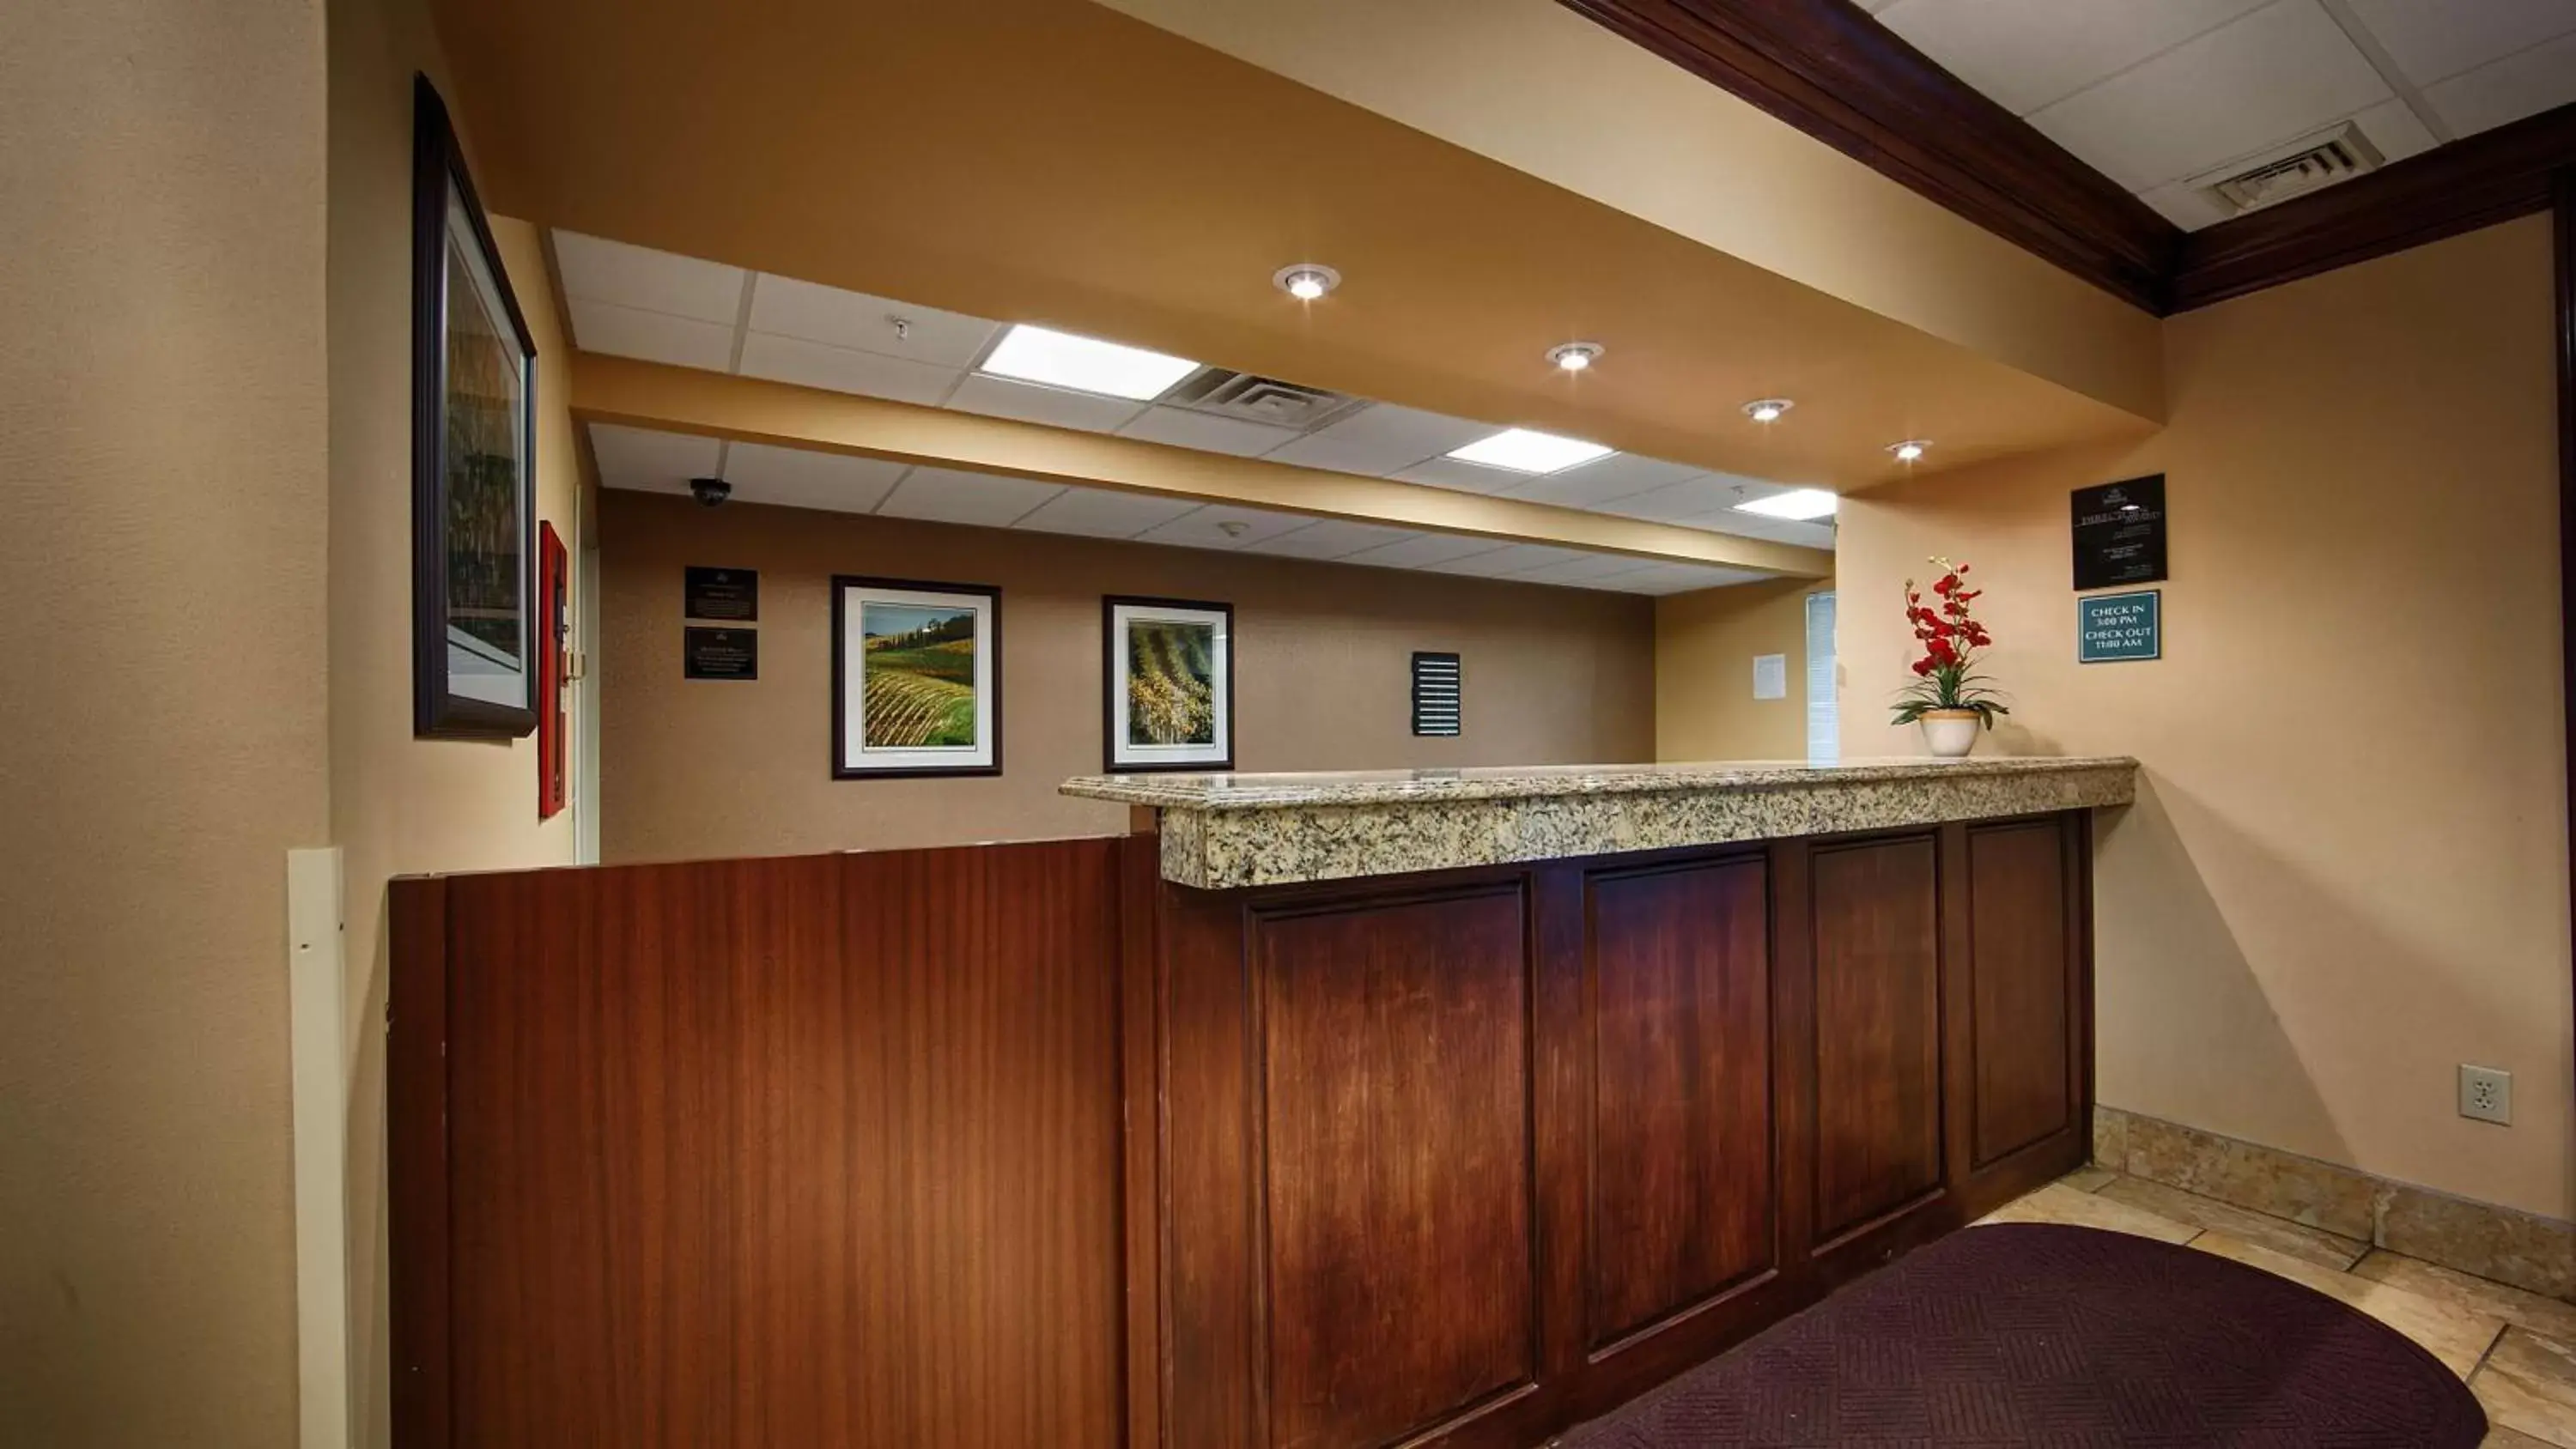 Lobby or reception, Lobby/Reception in Best Western Mason Inn